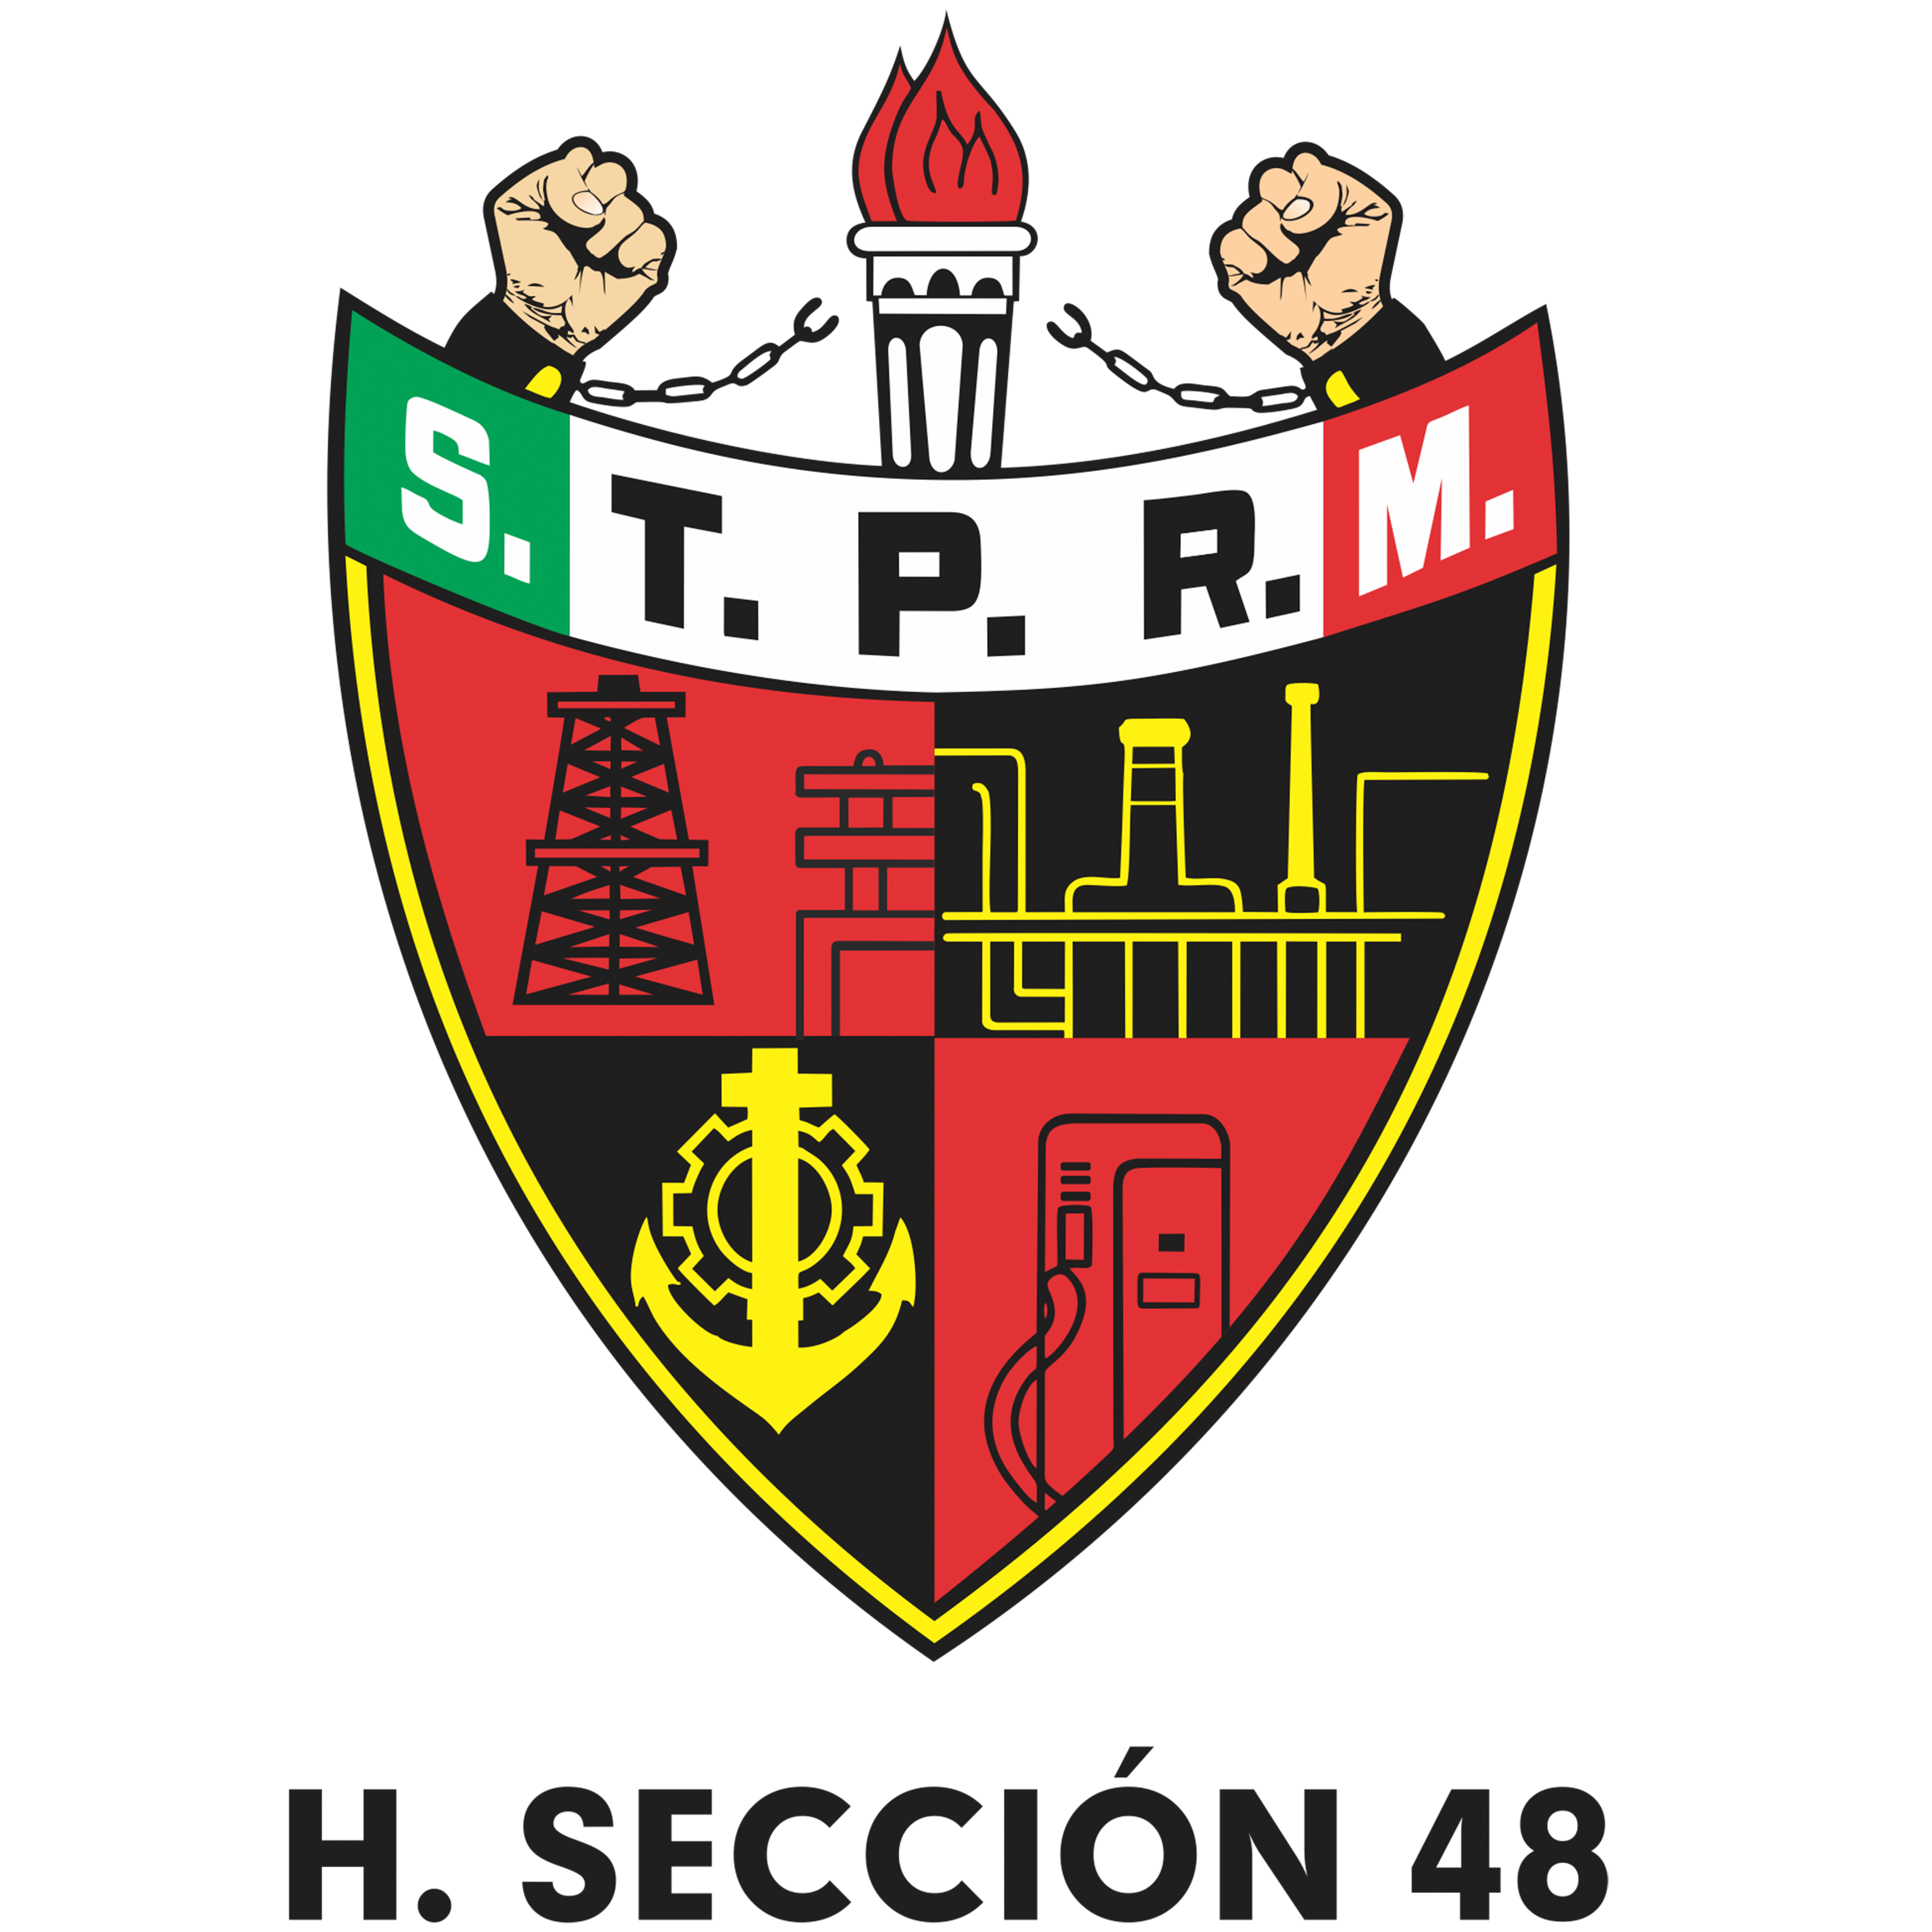 H. Sección 48 I STPRM